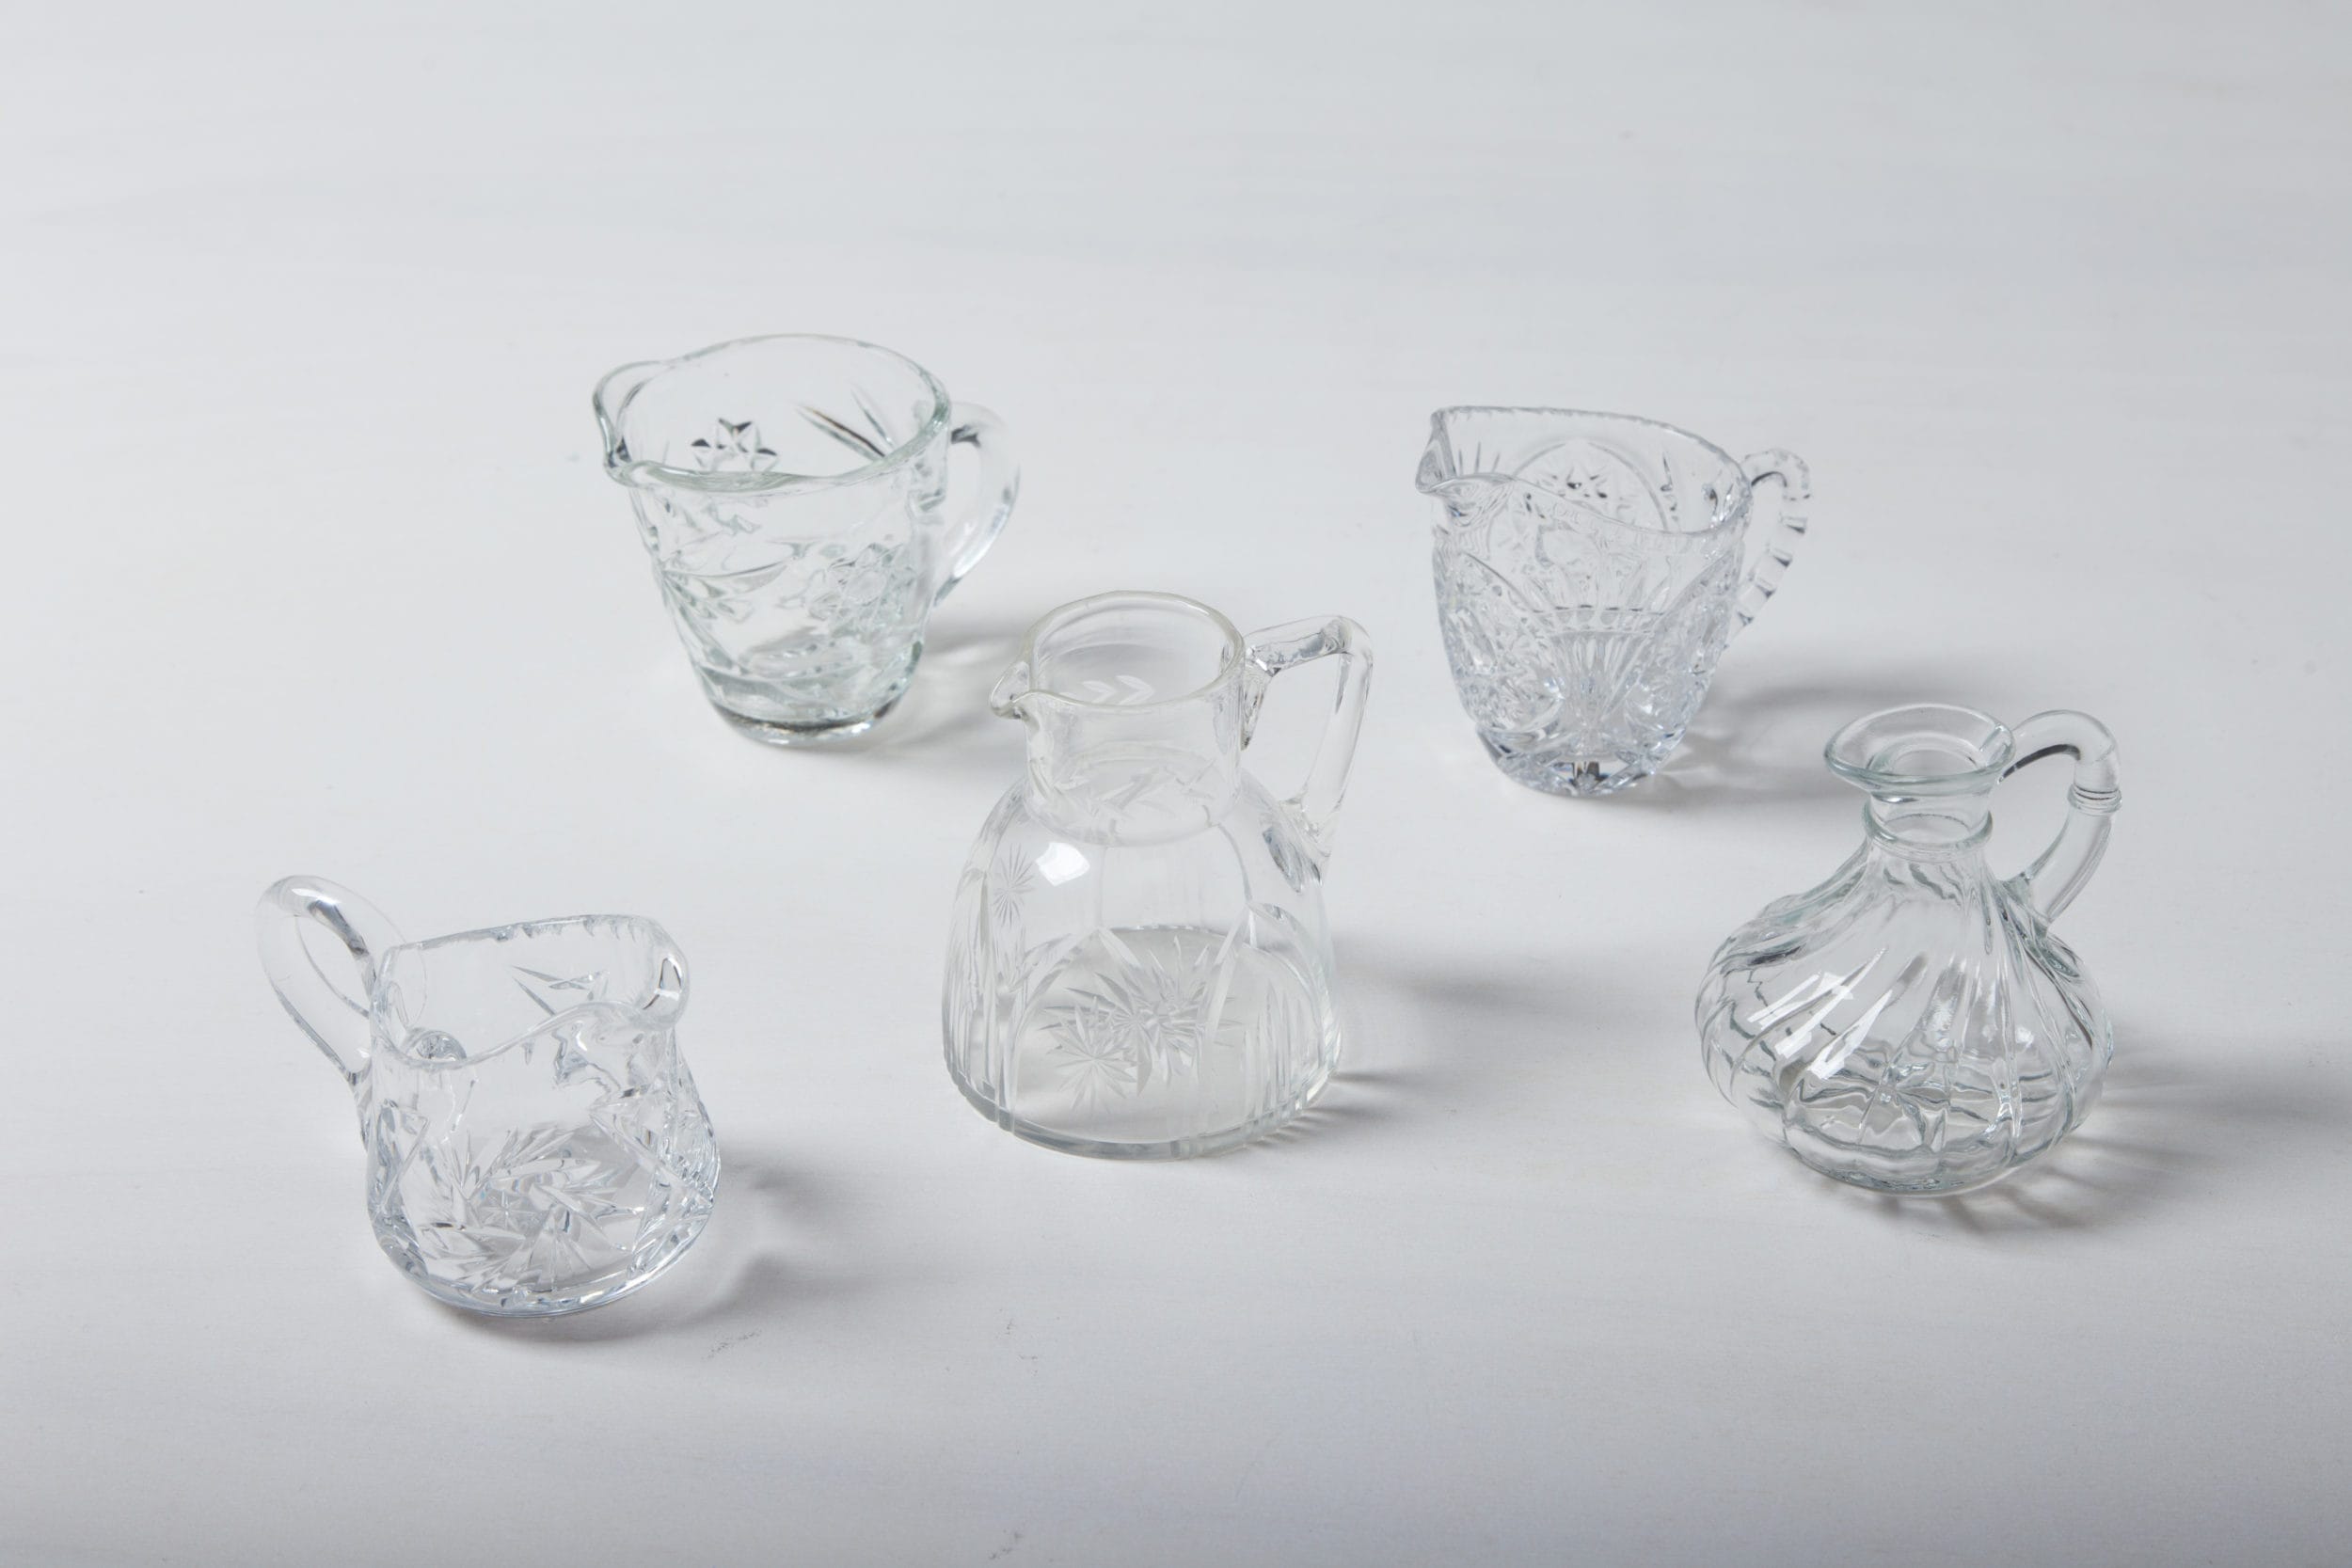 Diese Milch- und Sahnekännchen aus vintage Kristallglas verleihen dem festlichen gedecktem Tisch einen romantischen Look. Mit ihren zarten Verzierungen und der wunderschön geschwungenen, bauchigen Form vervollständigen sie jede Kuchentafel. Geeignet sind sie außerdem als wunderschöne, kleine Blumenvasen. Passend zu den Milchkännchen haben wir auch Zuckerdosen und zahlreiche Vasen und Schalen aus Kristall.